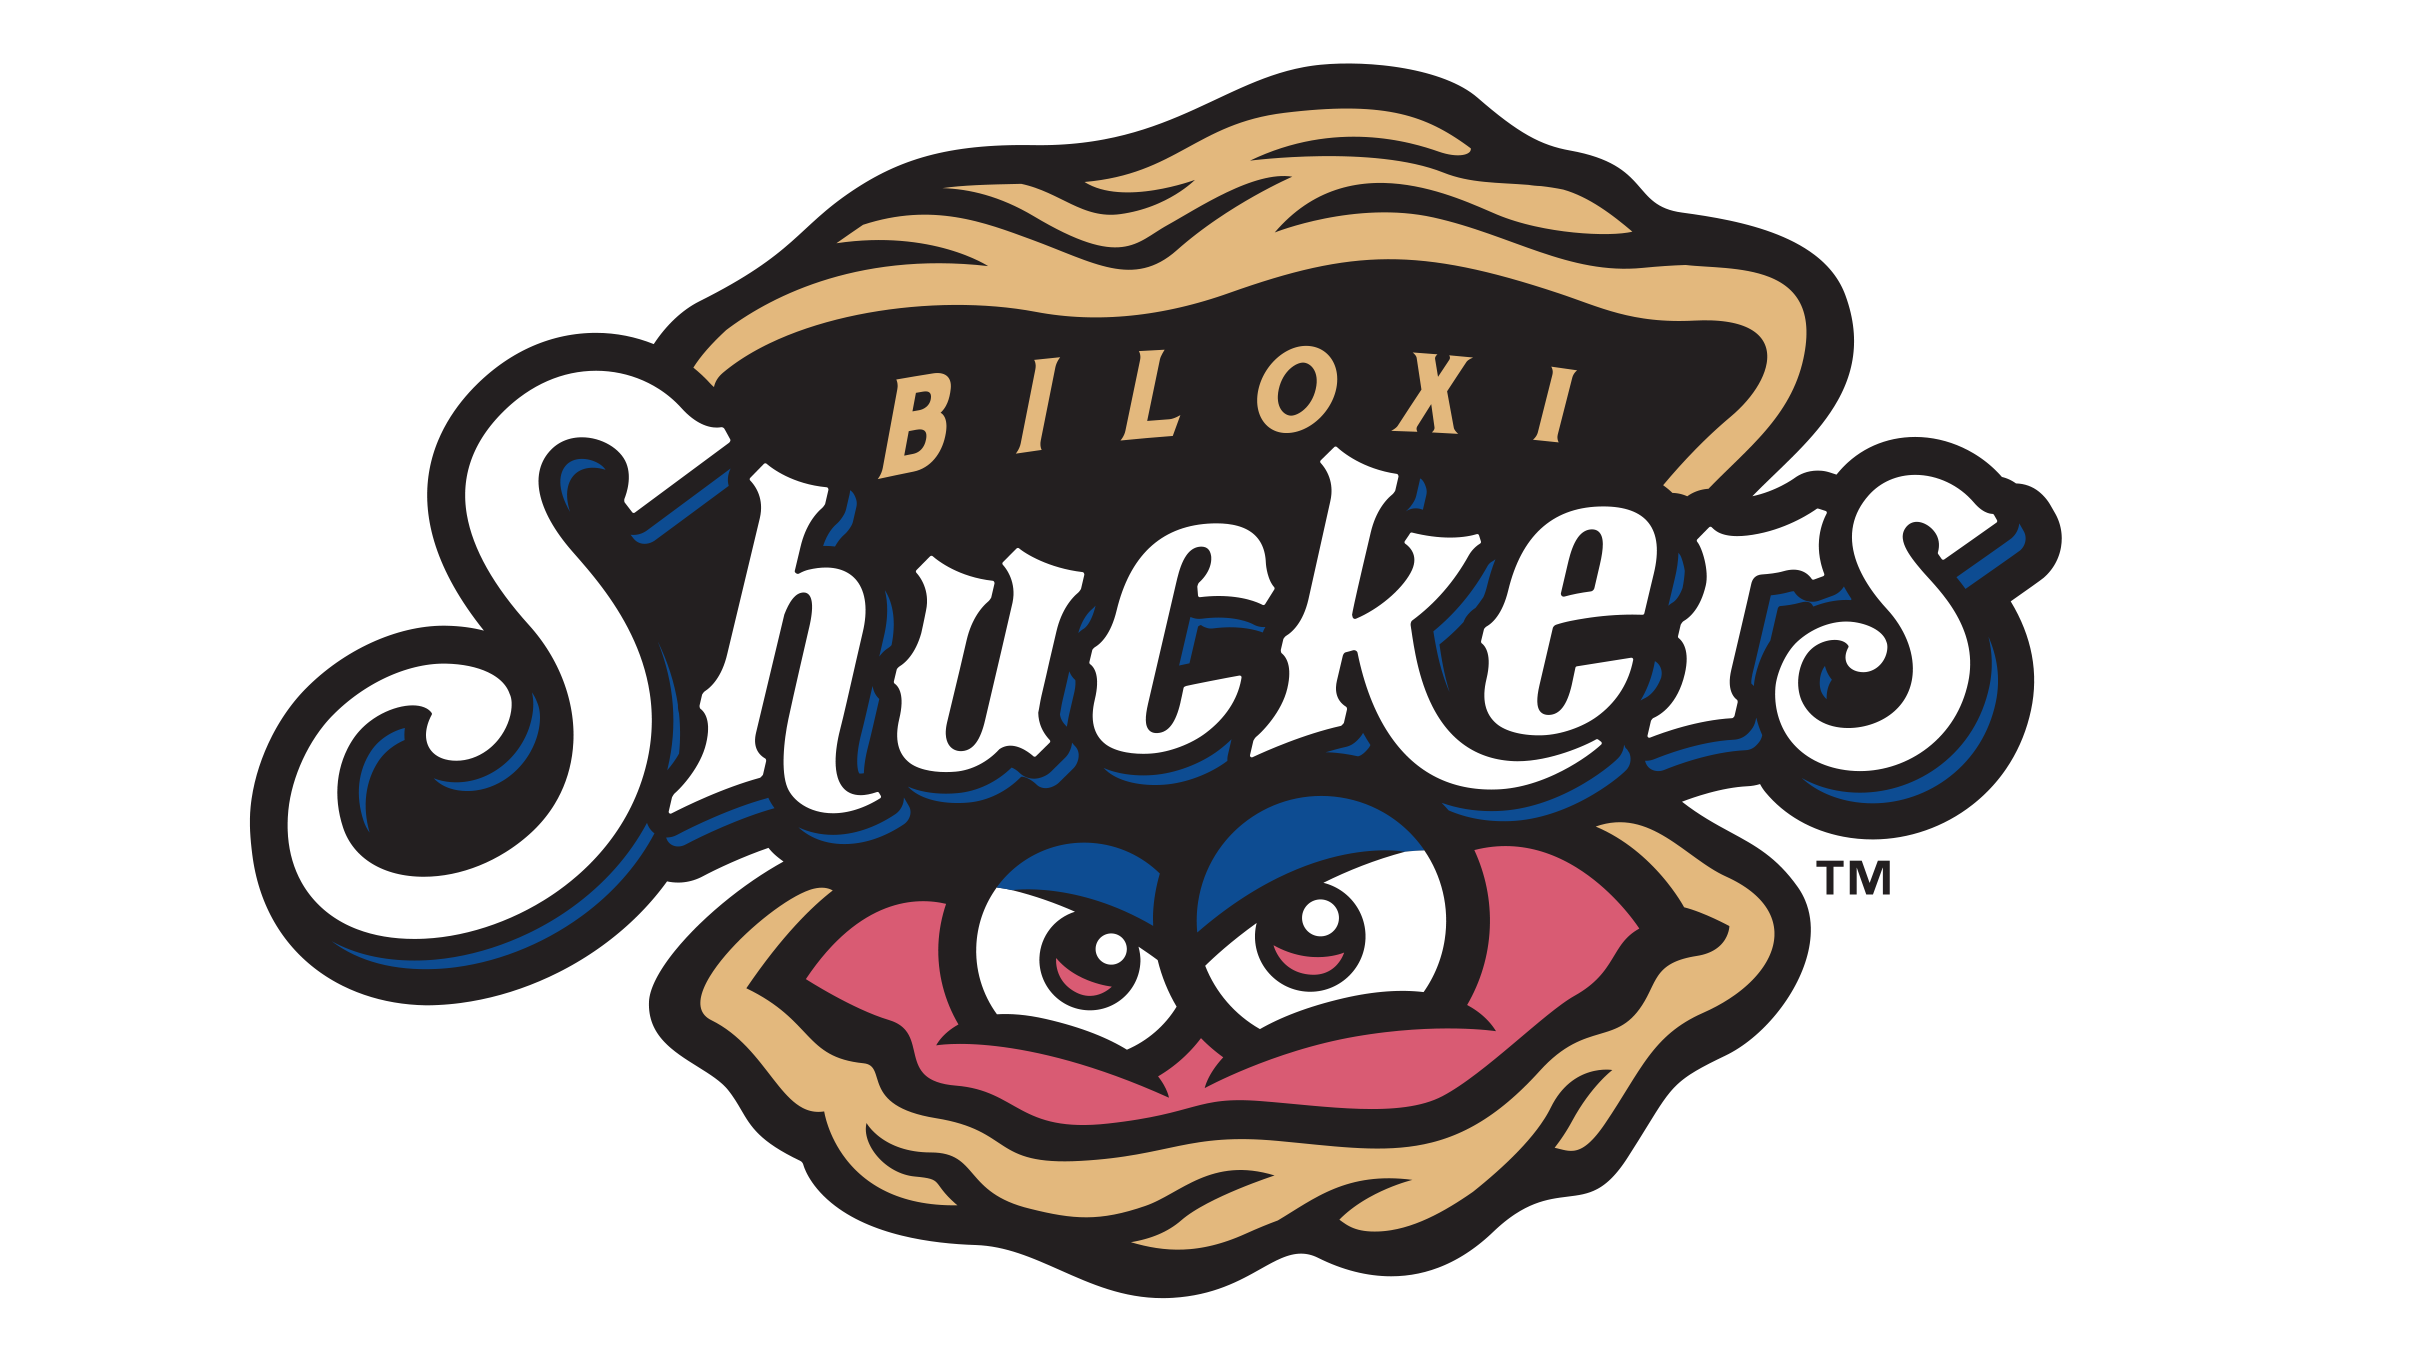 Biloxi Shuckers vs. Pensacola Blue Wahoos at MGM Park